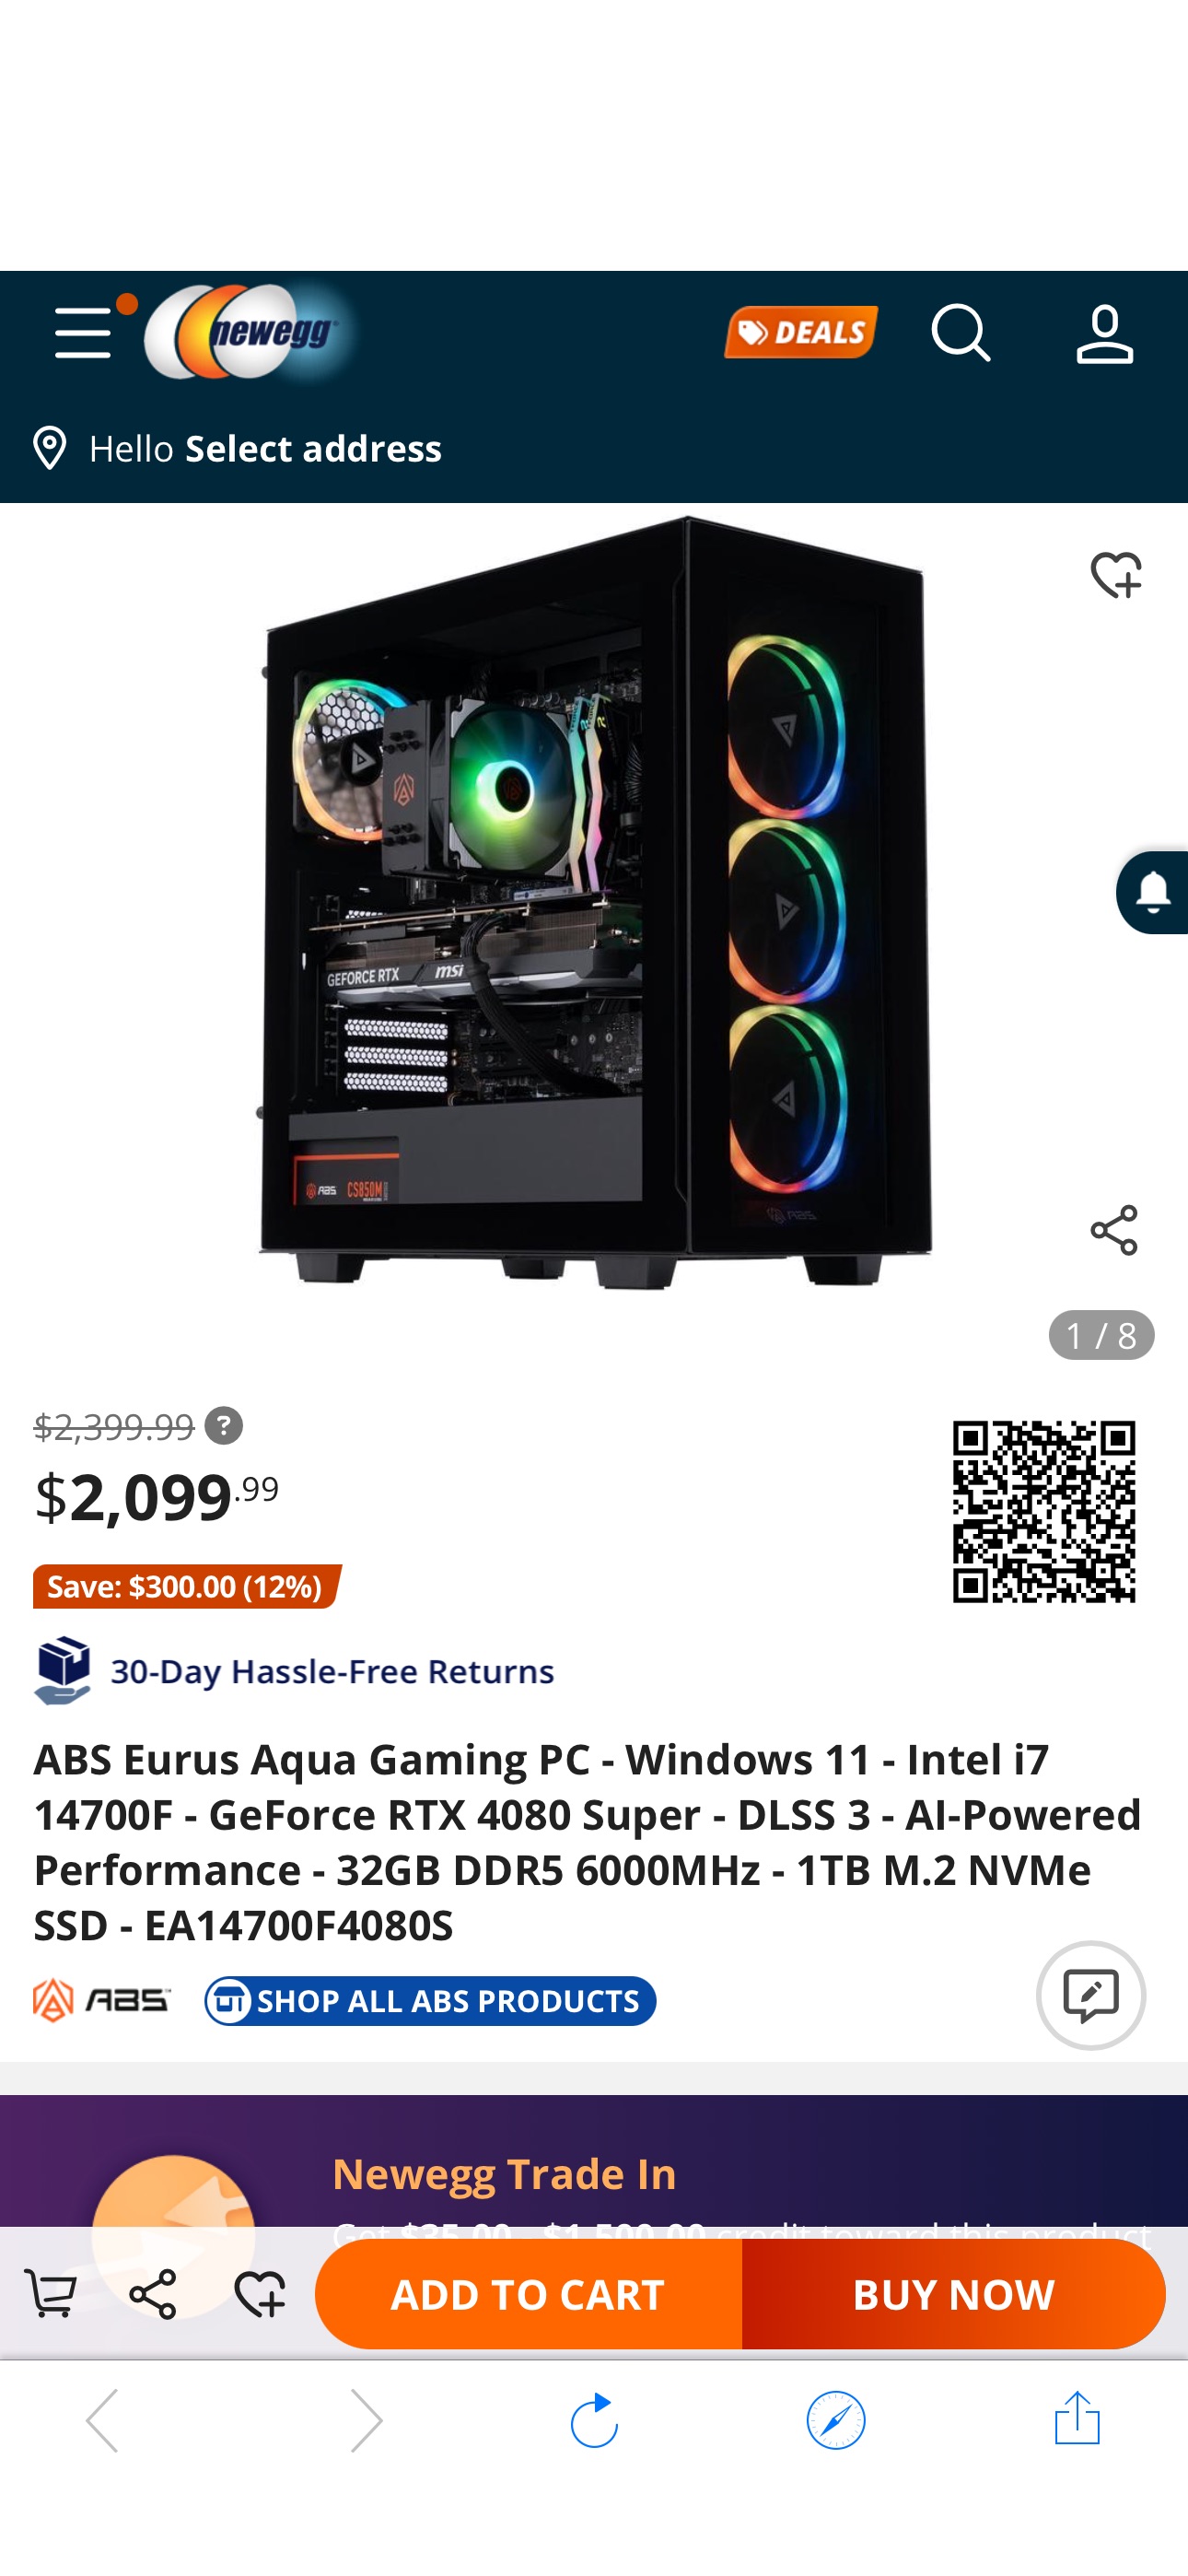 好价4080 super整机 ABS Eurus Aqua Gaming PC - Windows 11 - Intel i7 14700F - GeForce RTX 4080 Super - DLSS 3 - AI-Powered Performance - 32GB DDR5 6000MHz - 1TB M.2 NVMe SSD - EA14700F4080S - Newegg.com